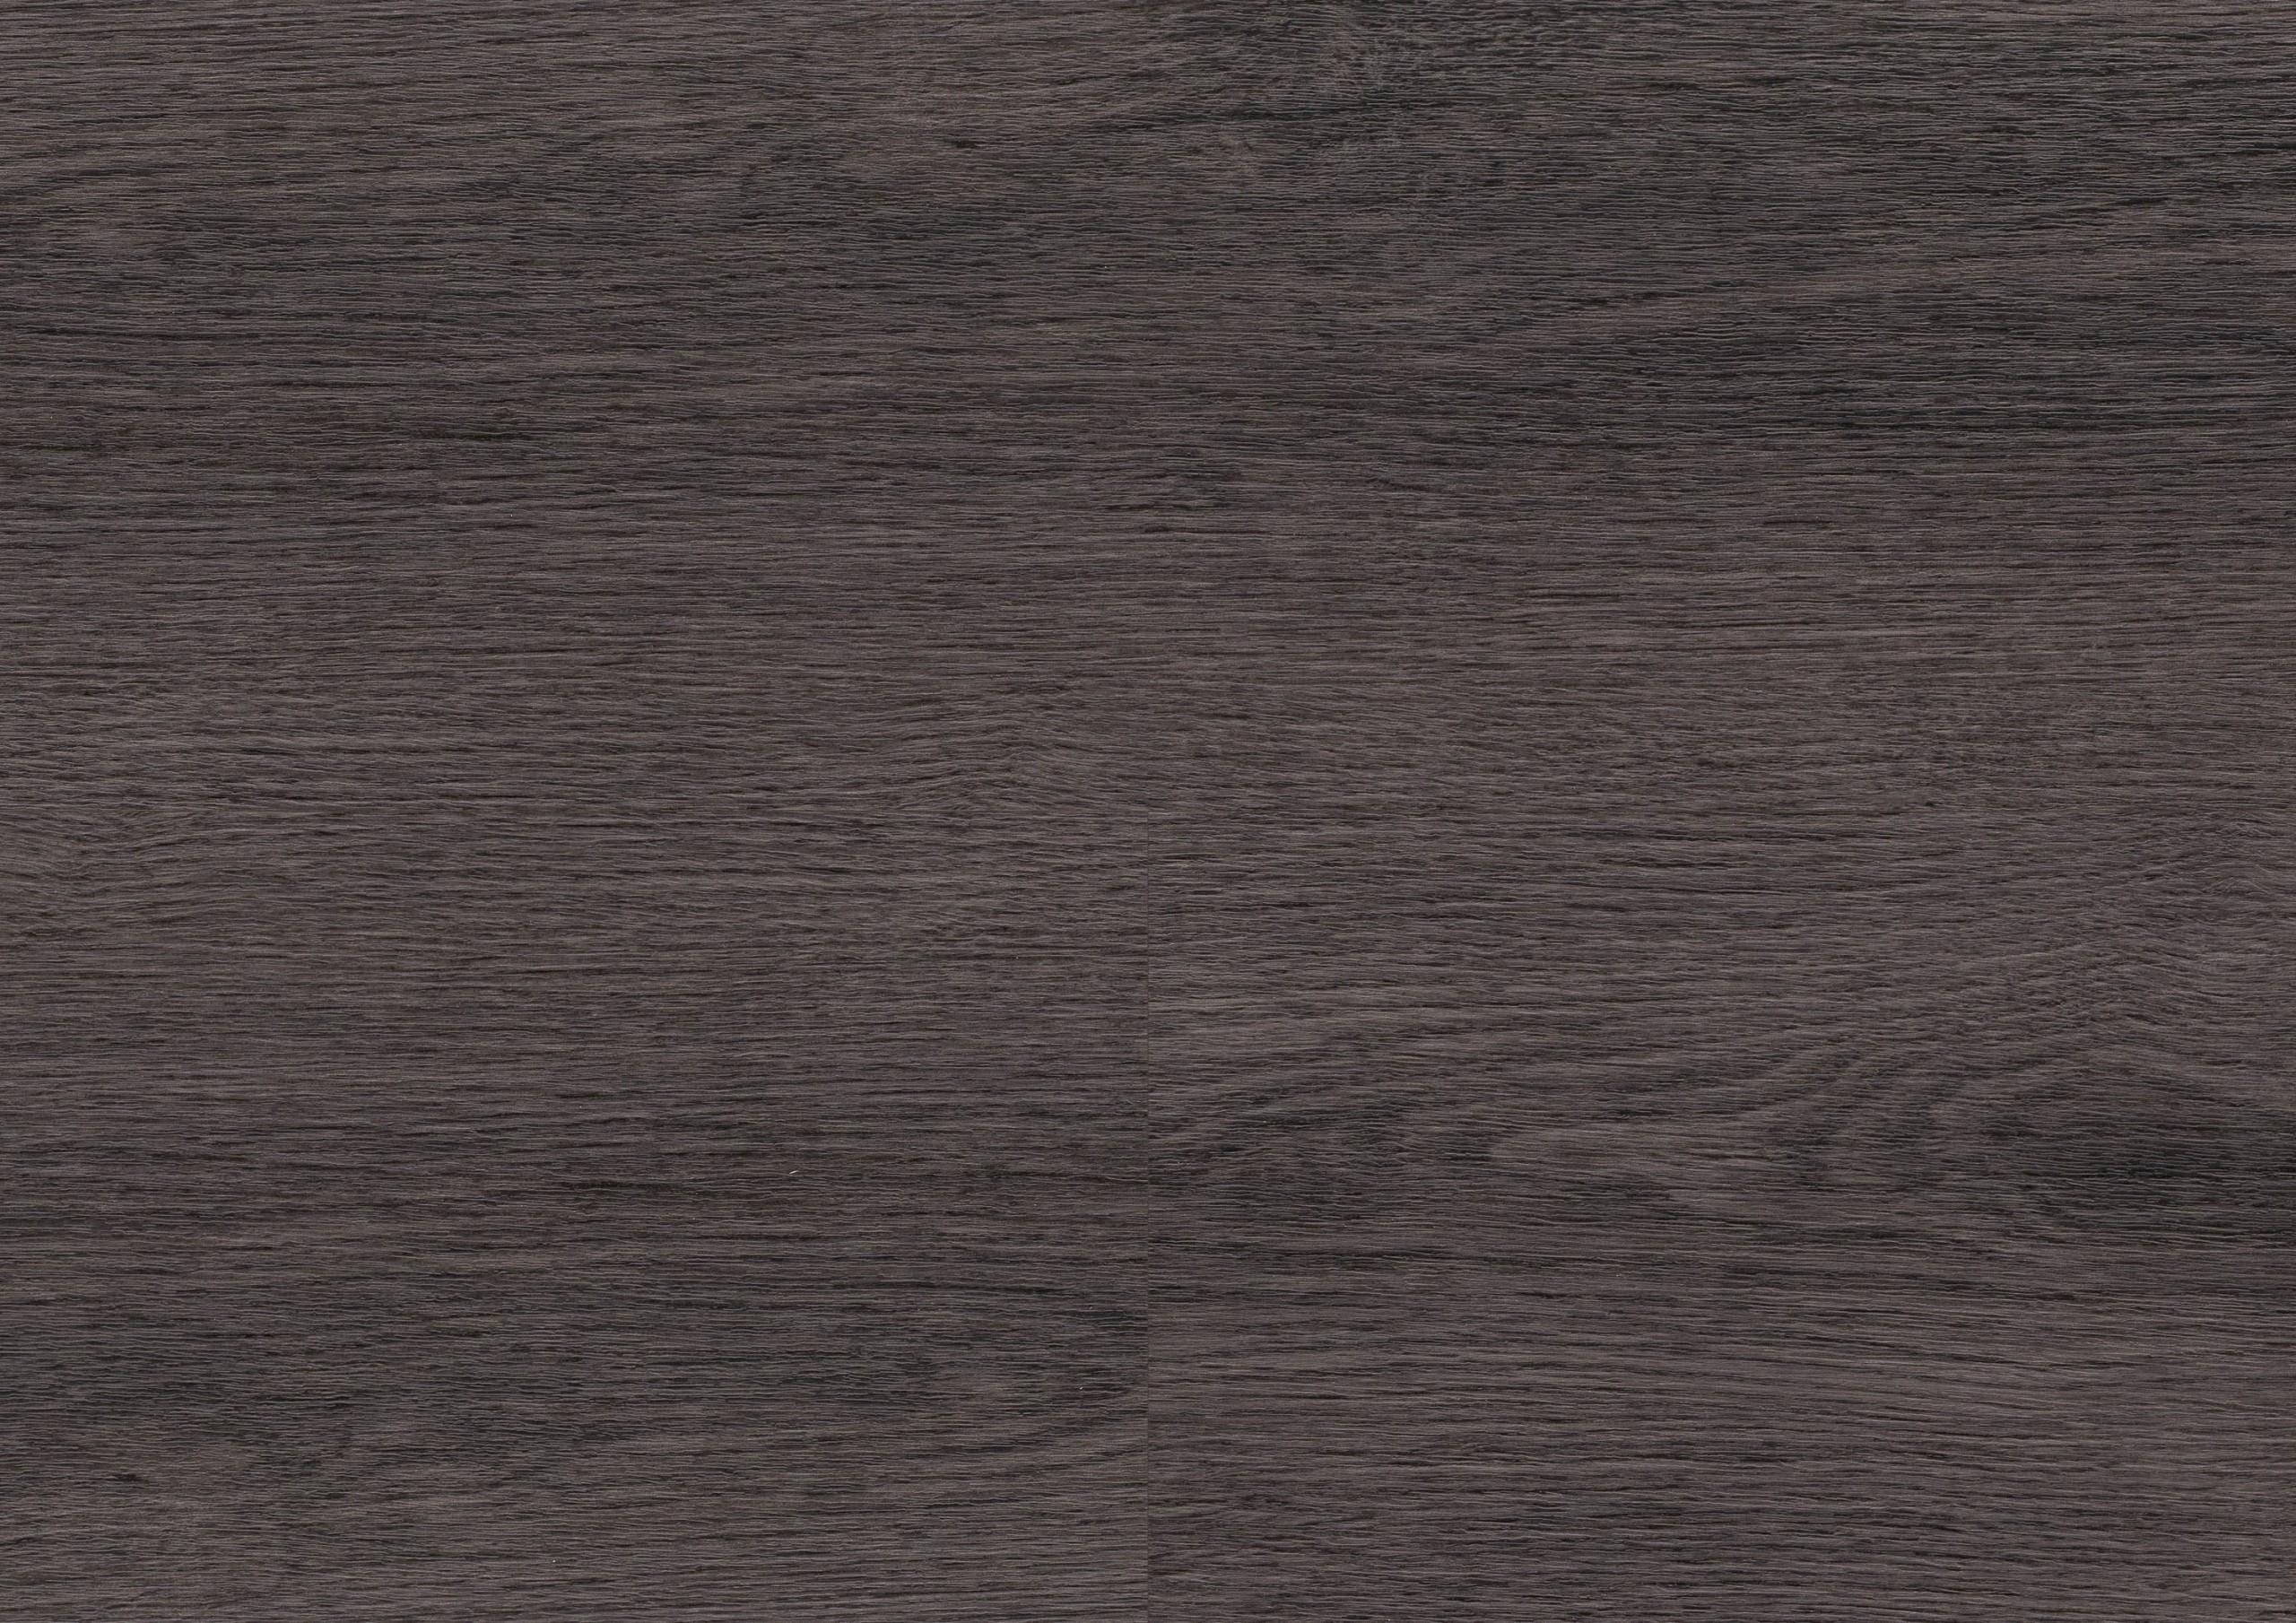 wineo 600 wood Designboden Art. DB188W6 Klebeplanke Modern Place 2 mm